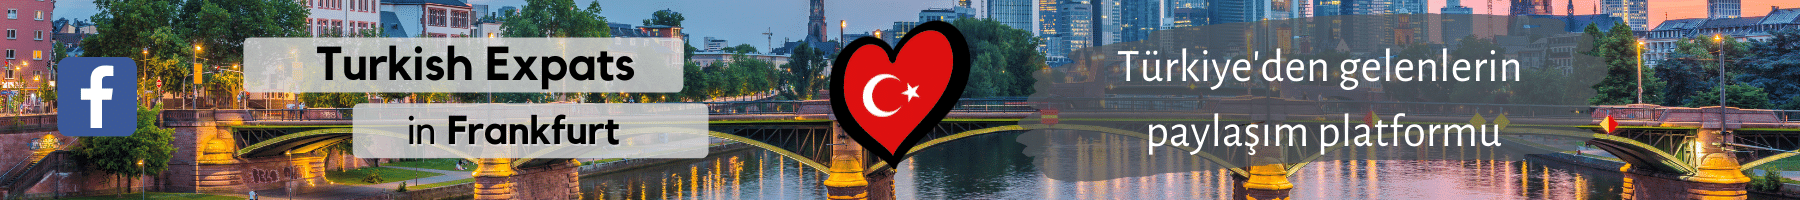 Turkish Expats in Frankfurt